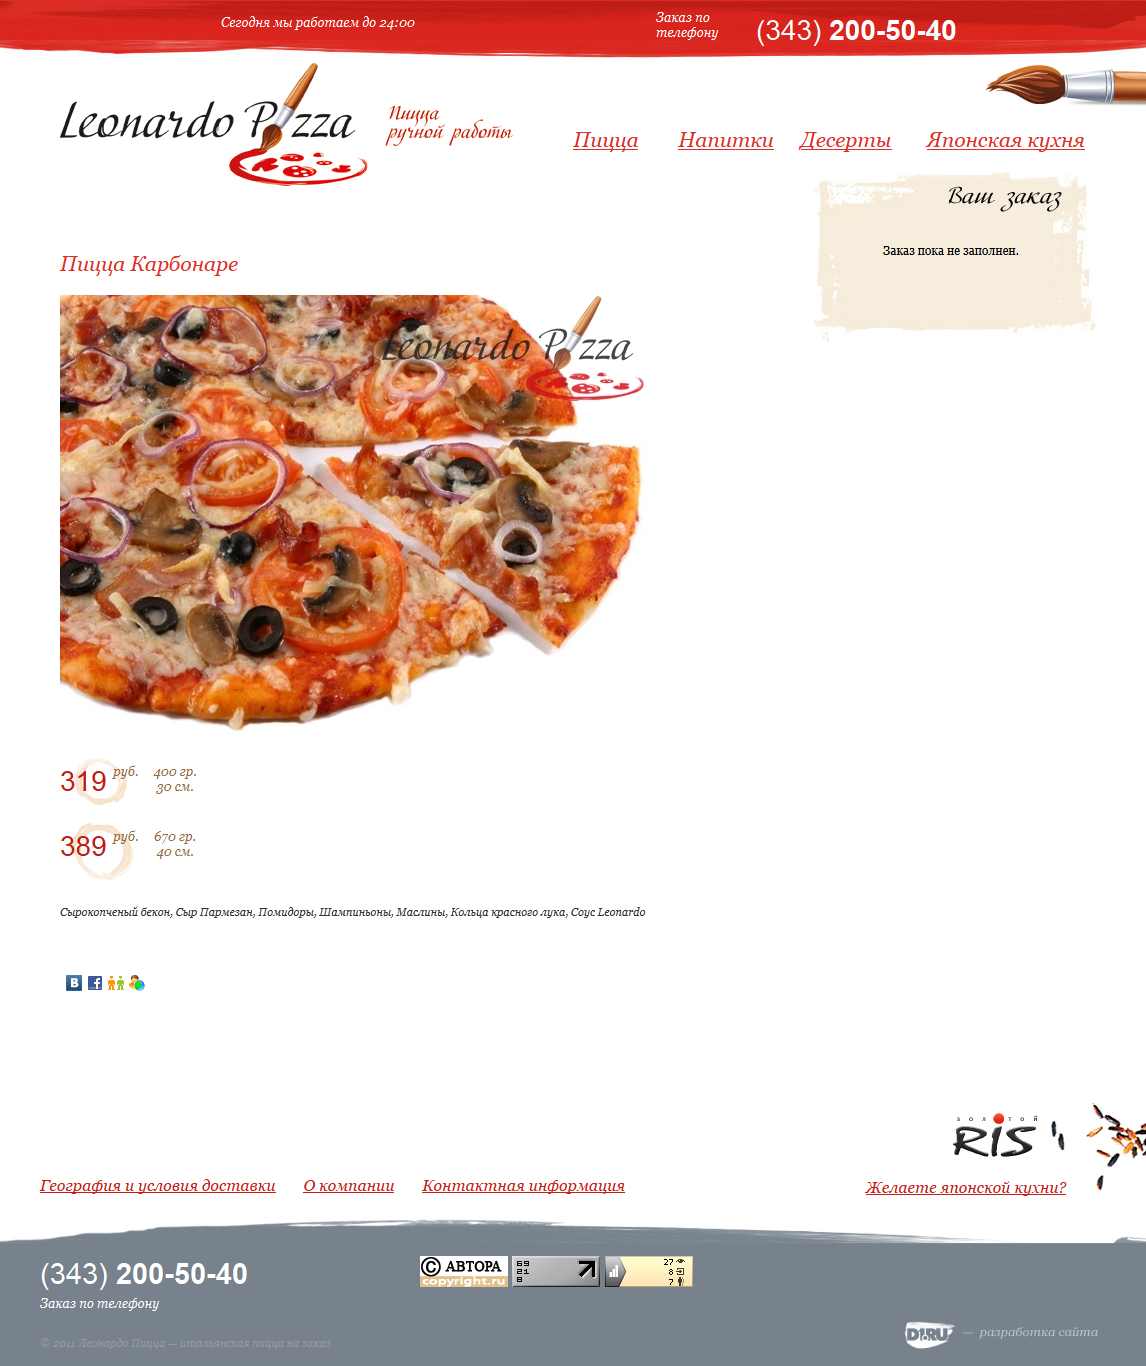   Leonardo-Pizza